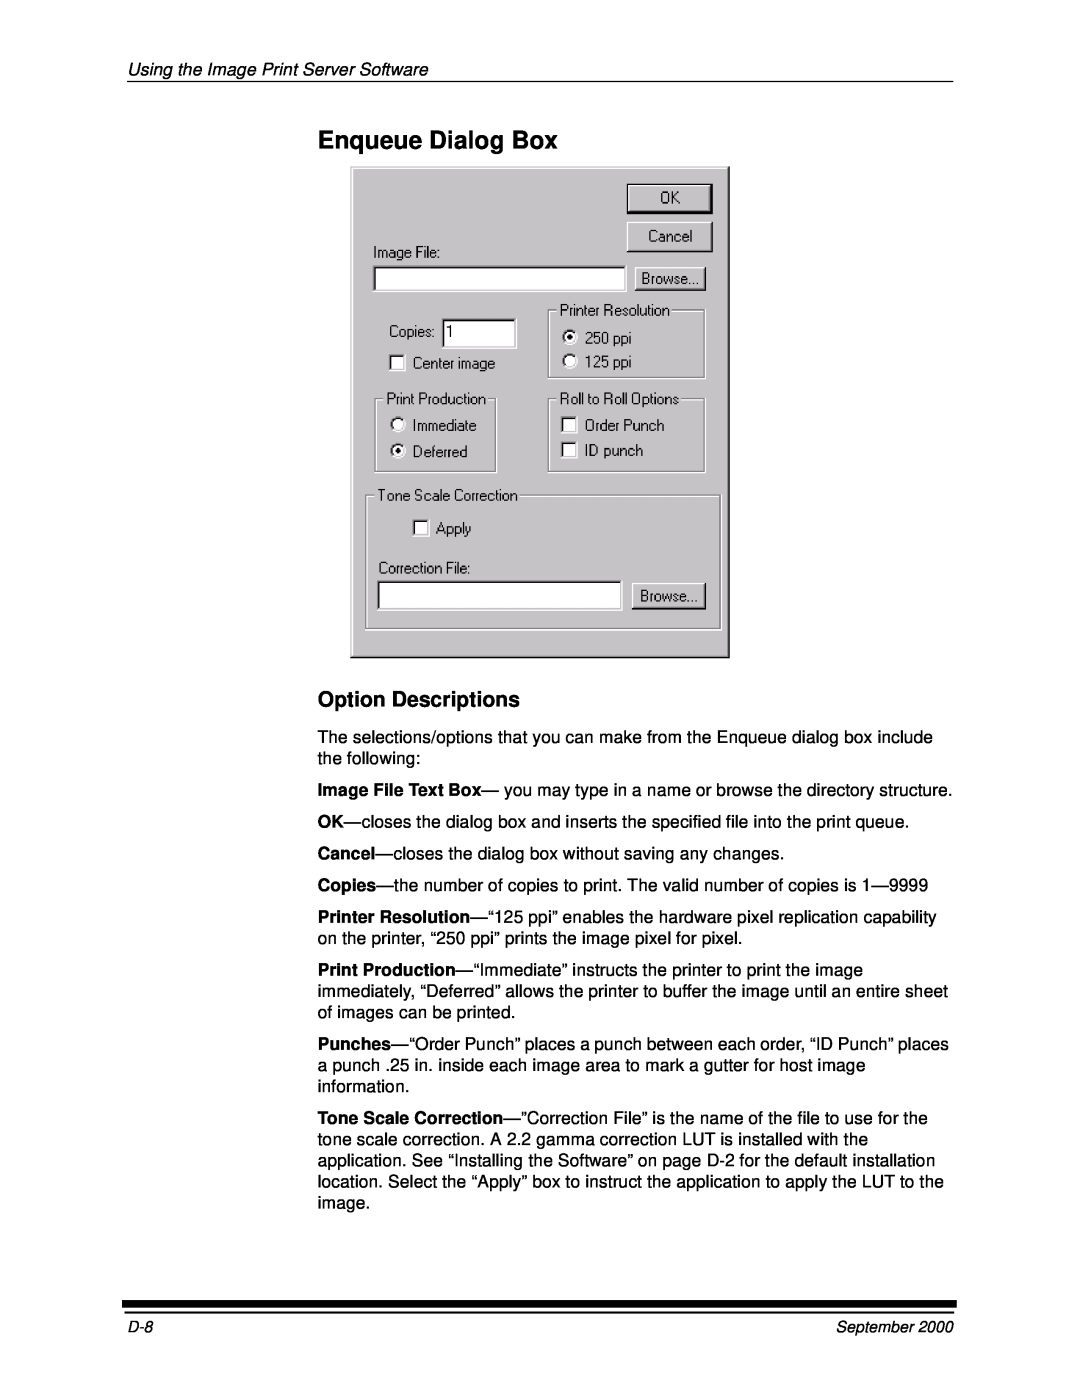 Kodak 20P manual Enqueue Dialog Box, Option Descriptions, Using the Image Print Server Software 